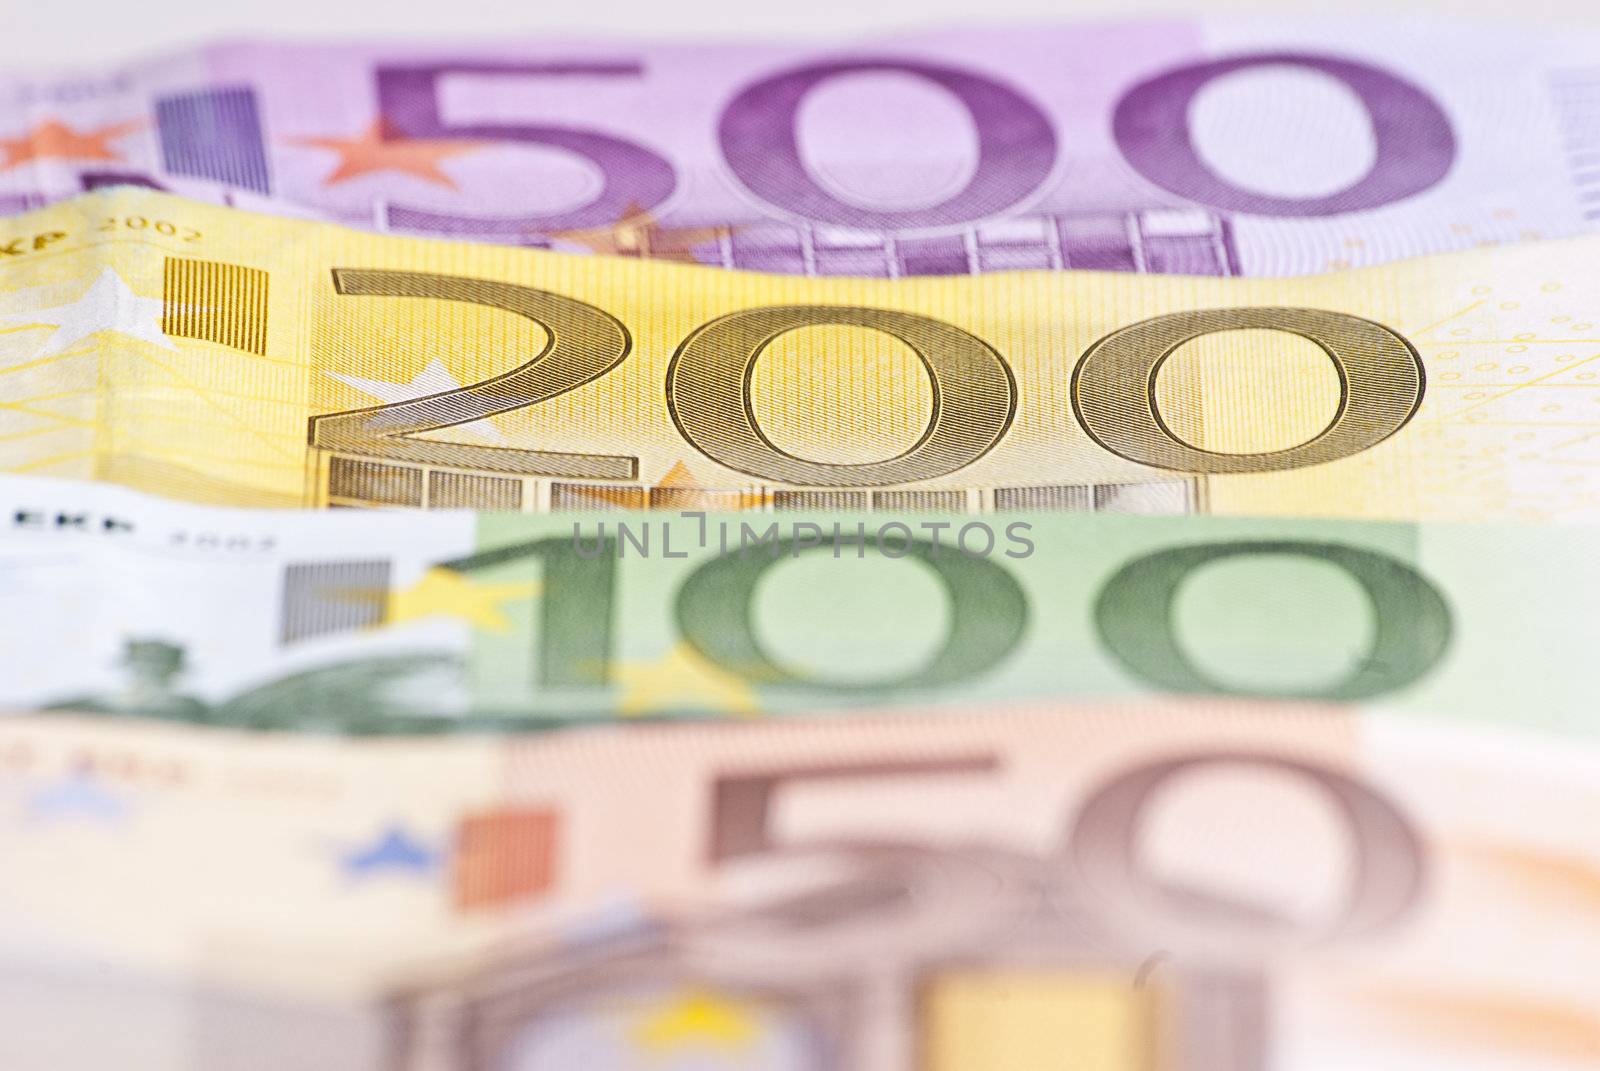 Euro Money Background by adamr